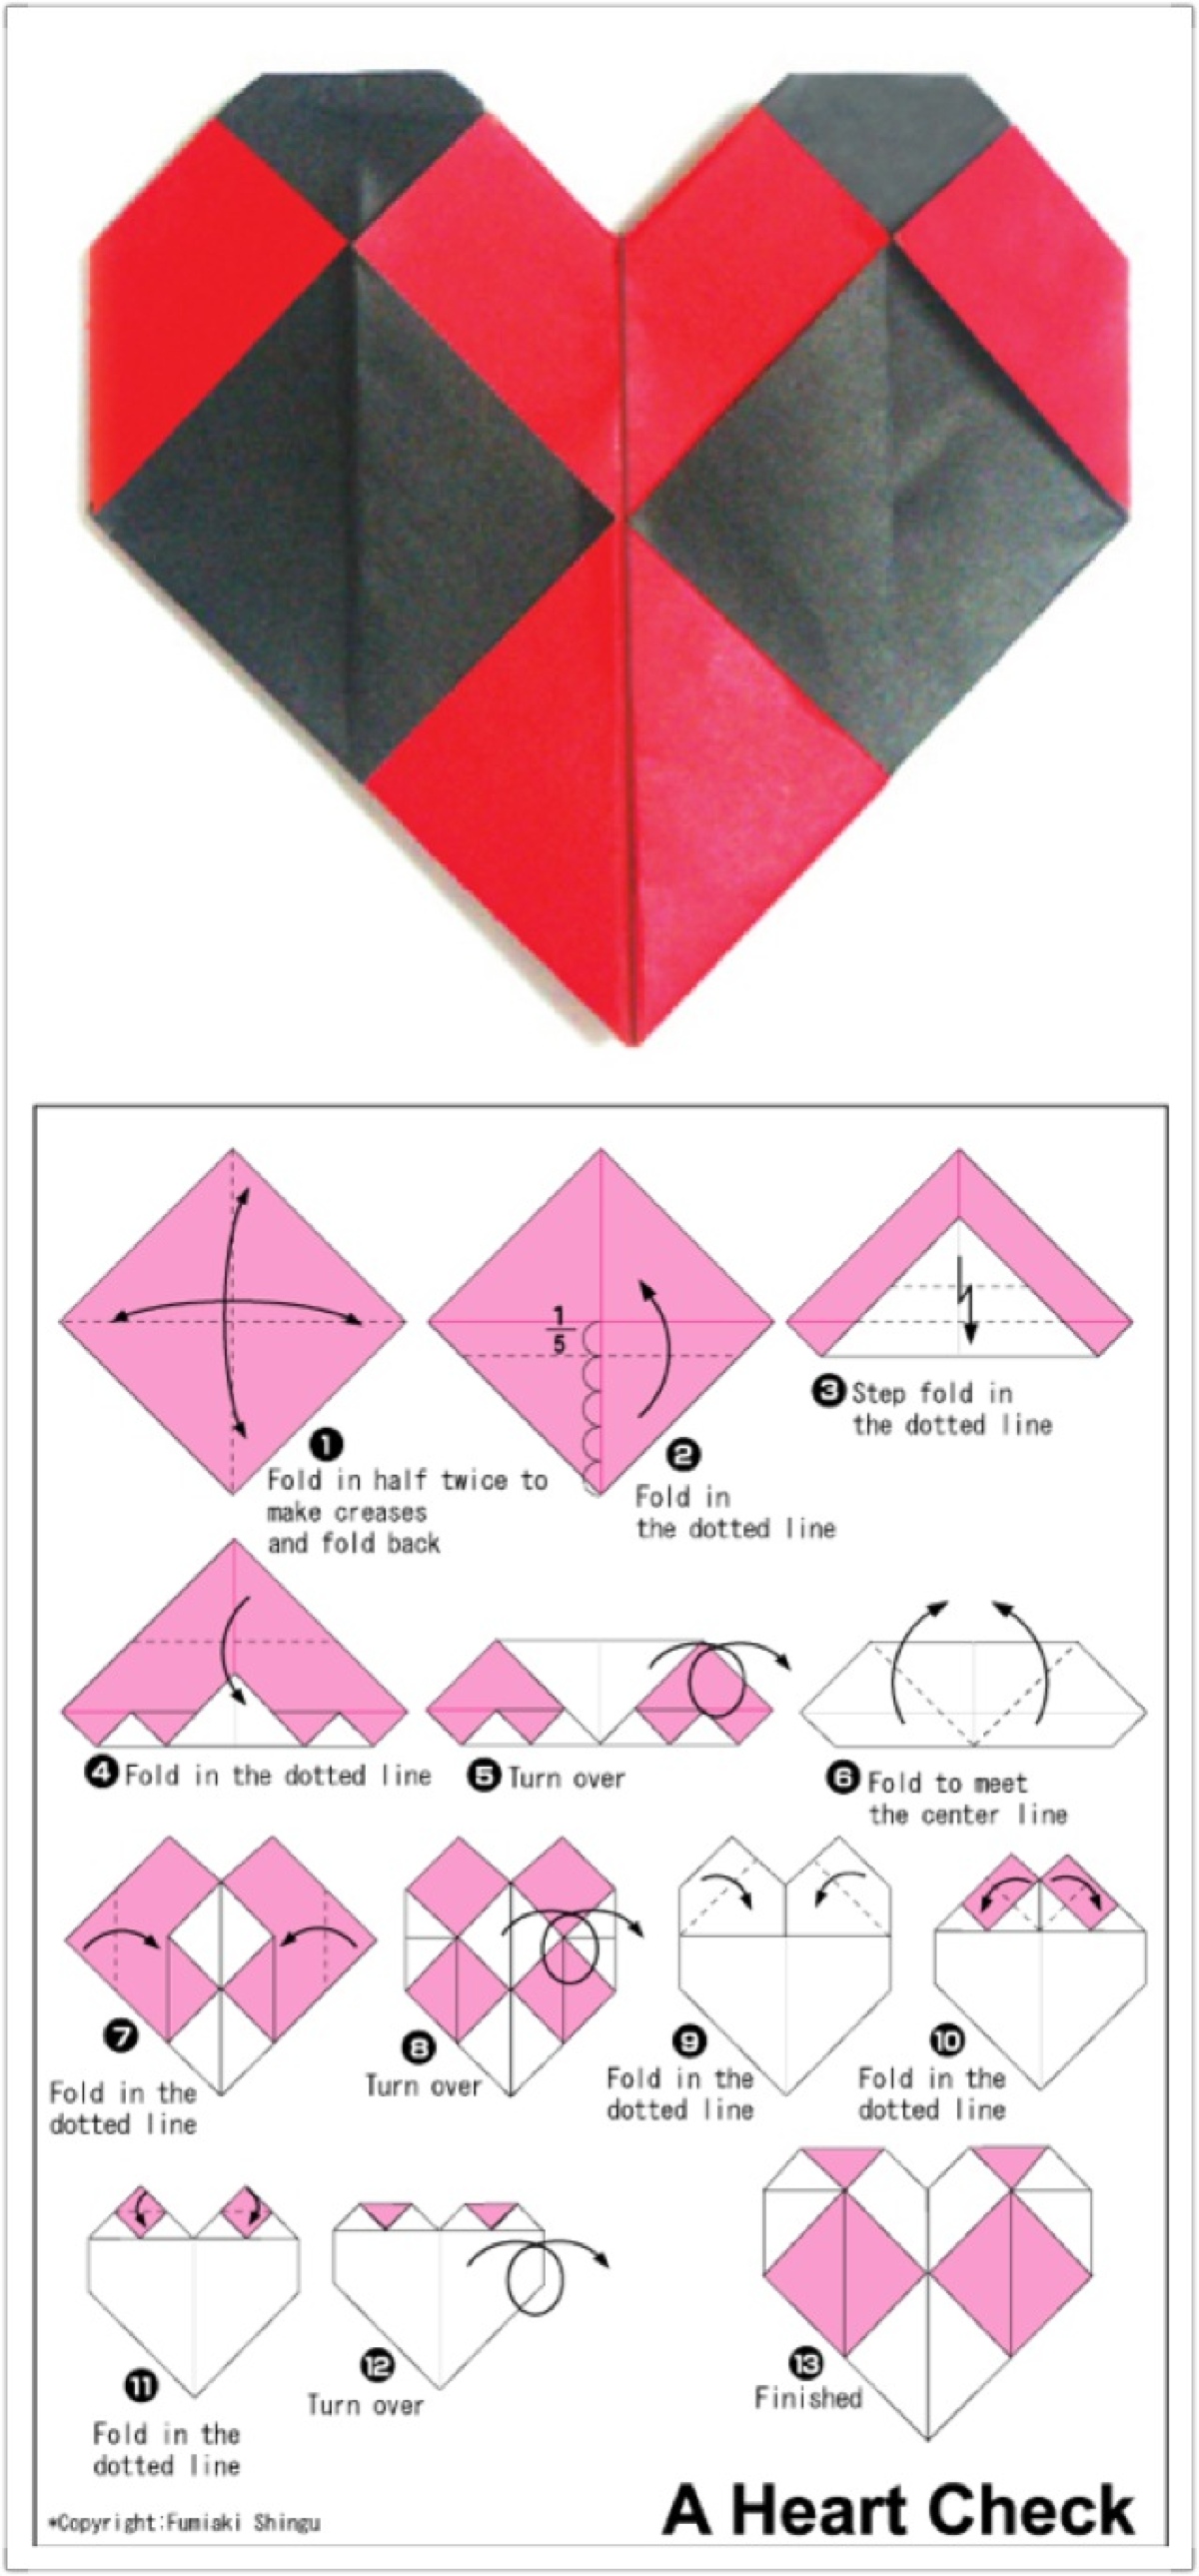 纸折爱心步骤图教程图片